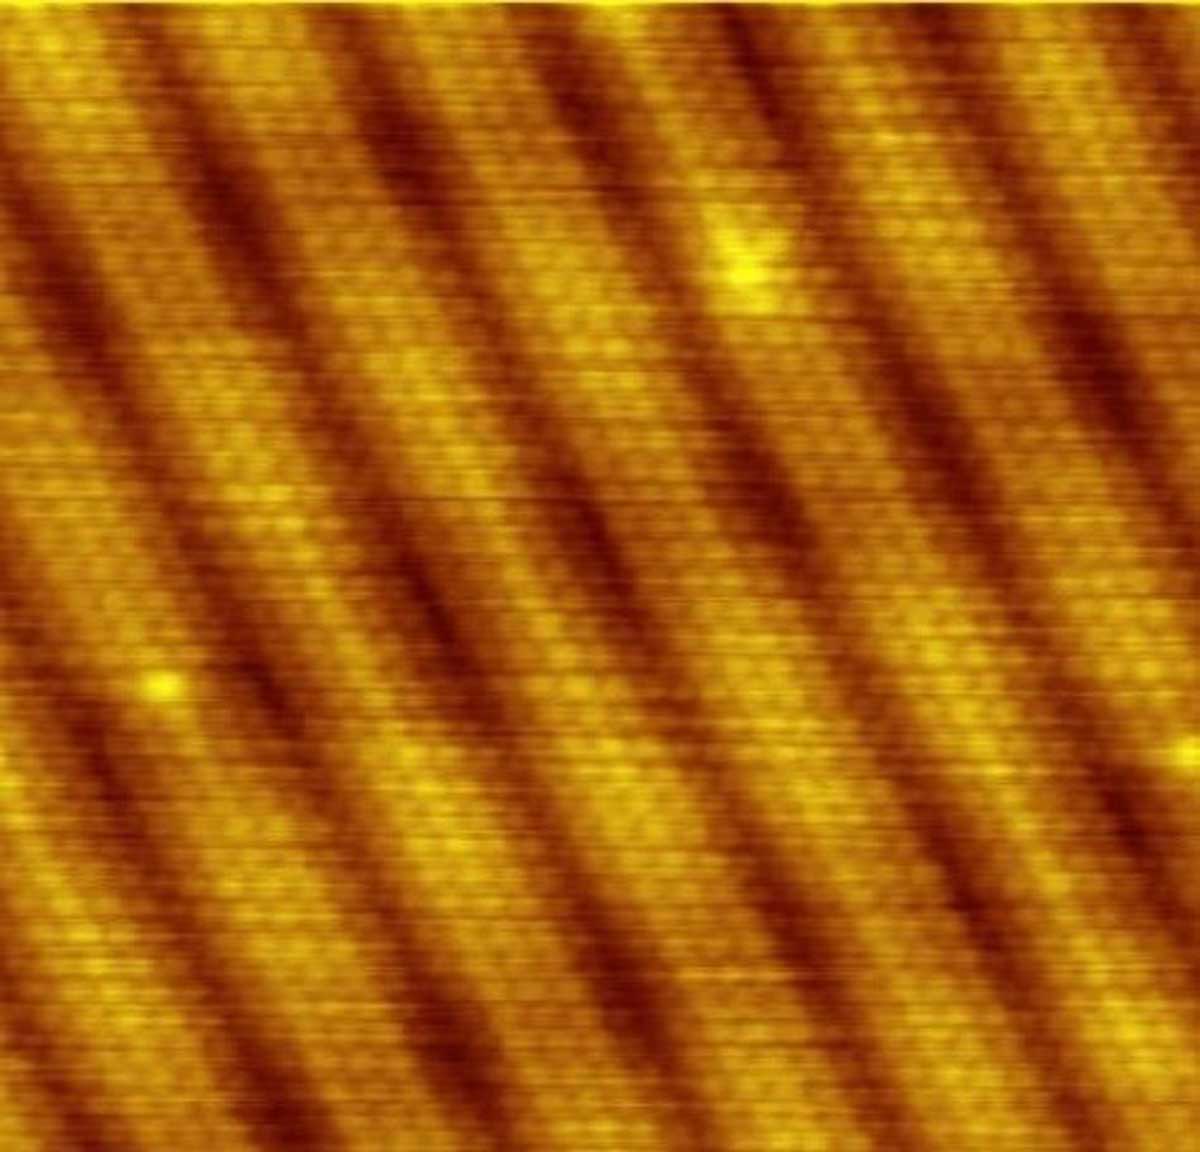 金表面的 STM 图像。 单个原子及其排列是直接可见的。 暗带对应于表面的凹坑，没有原子。